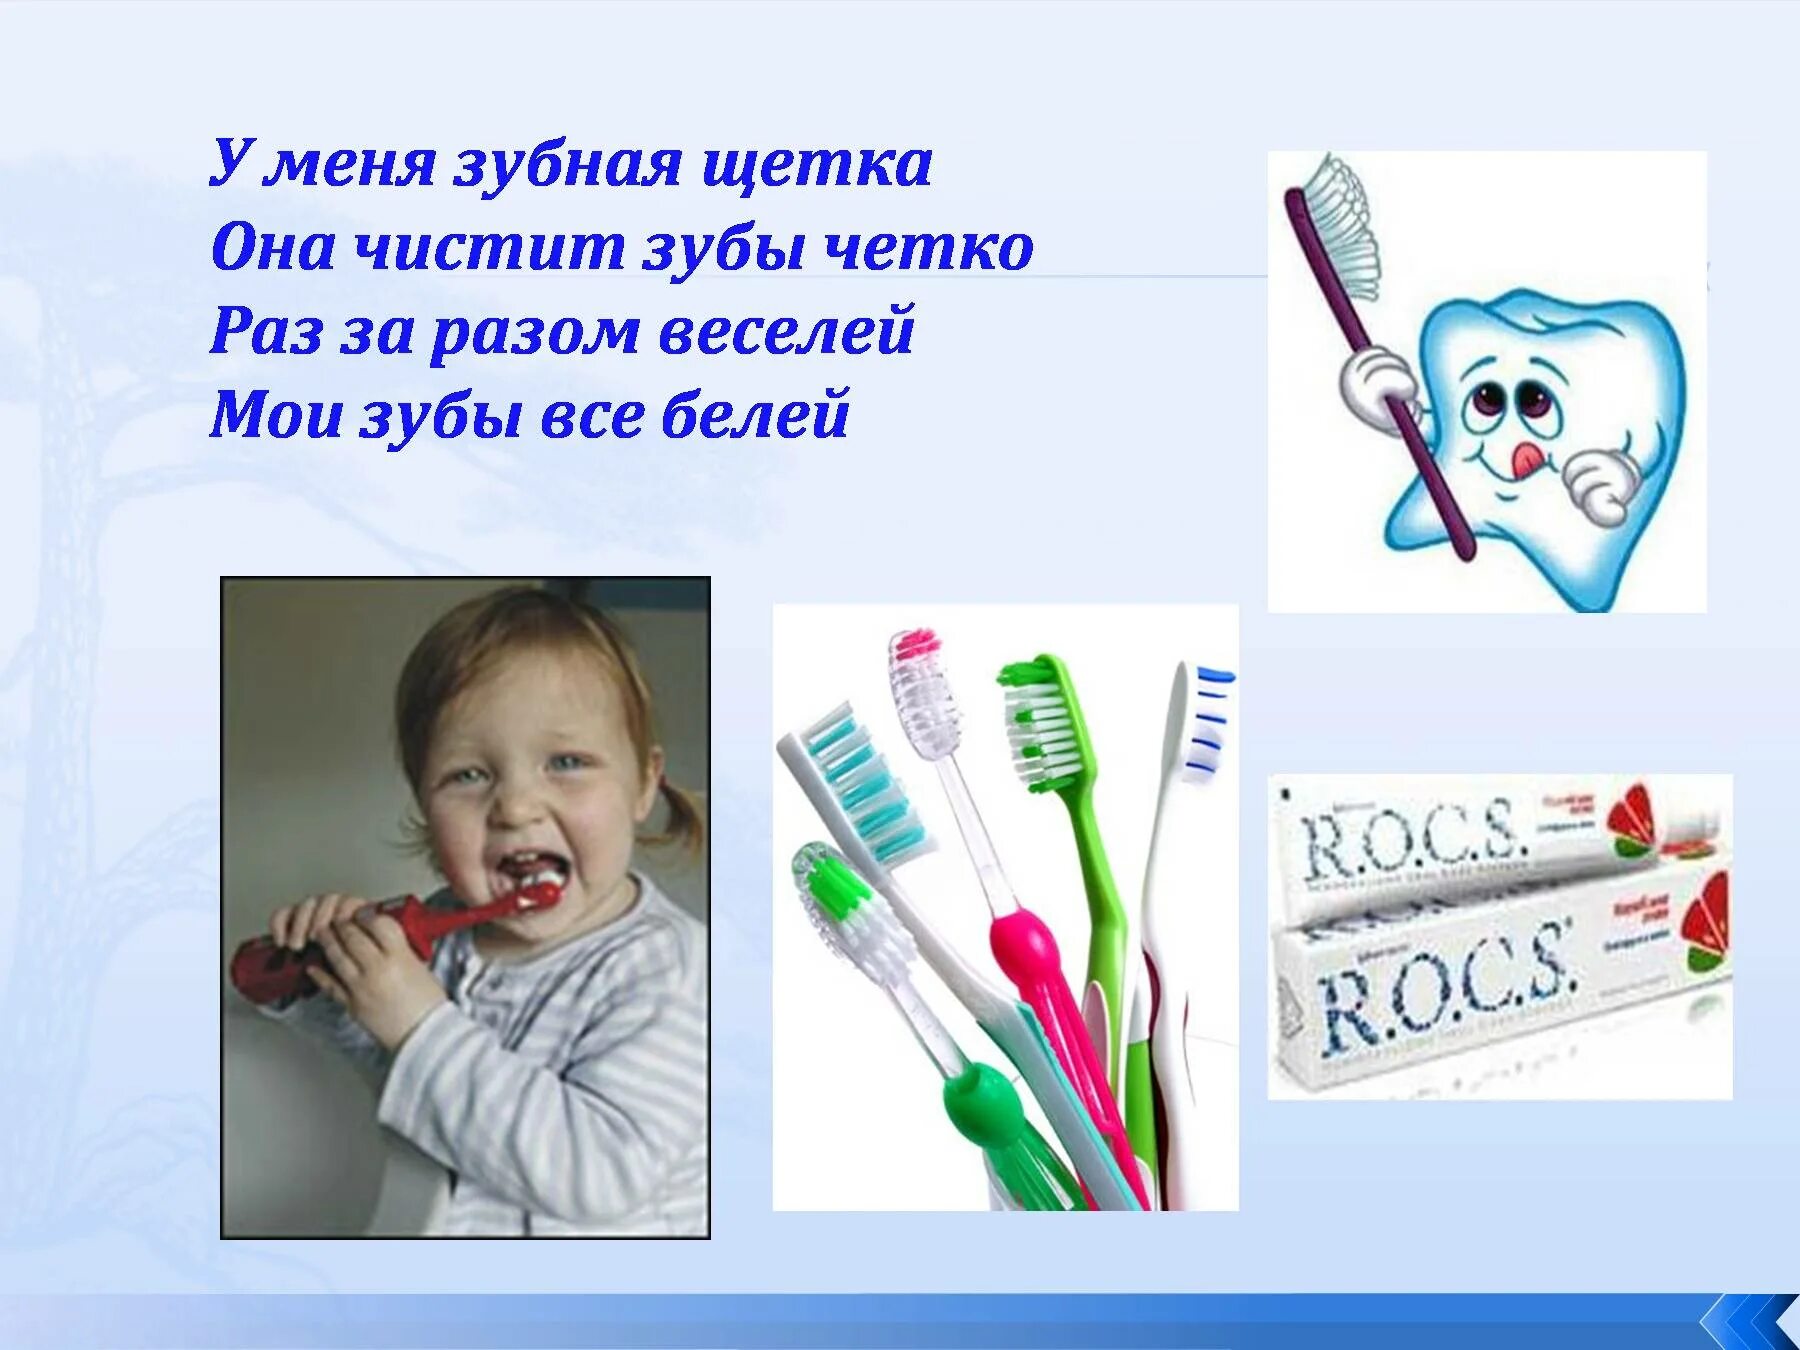 Сказки чистить зубы. Зубная щетка для презентации. Зуб с зубной щеткой. Стихотворение про зубную щетку. Стих про зубную щетку для детей.